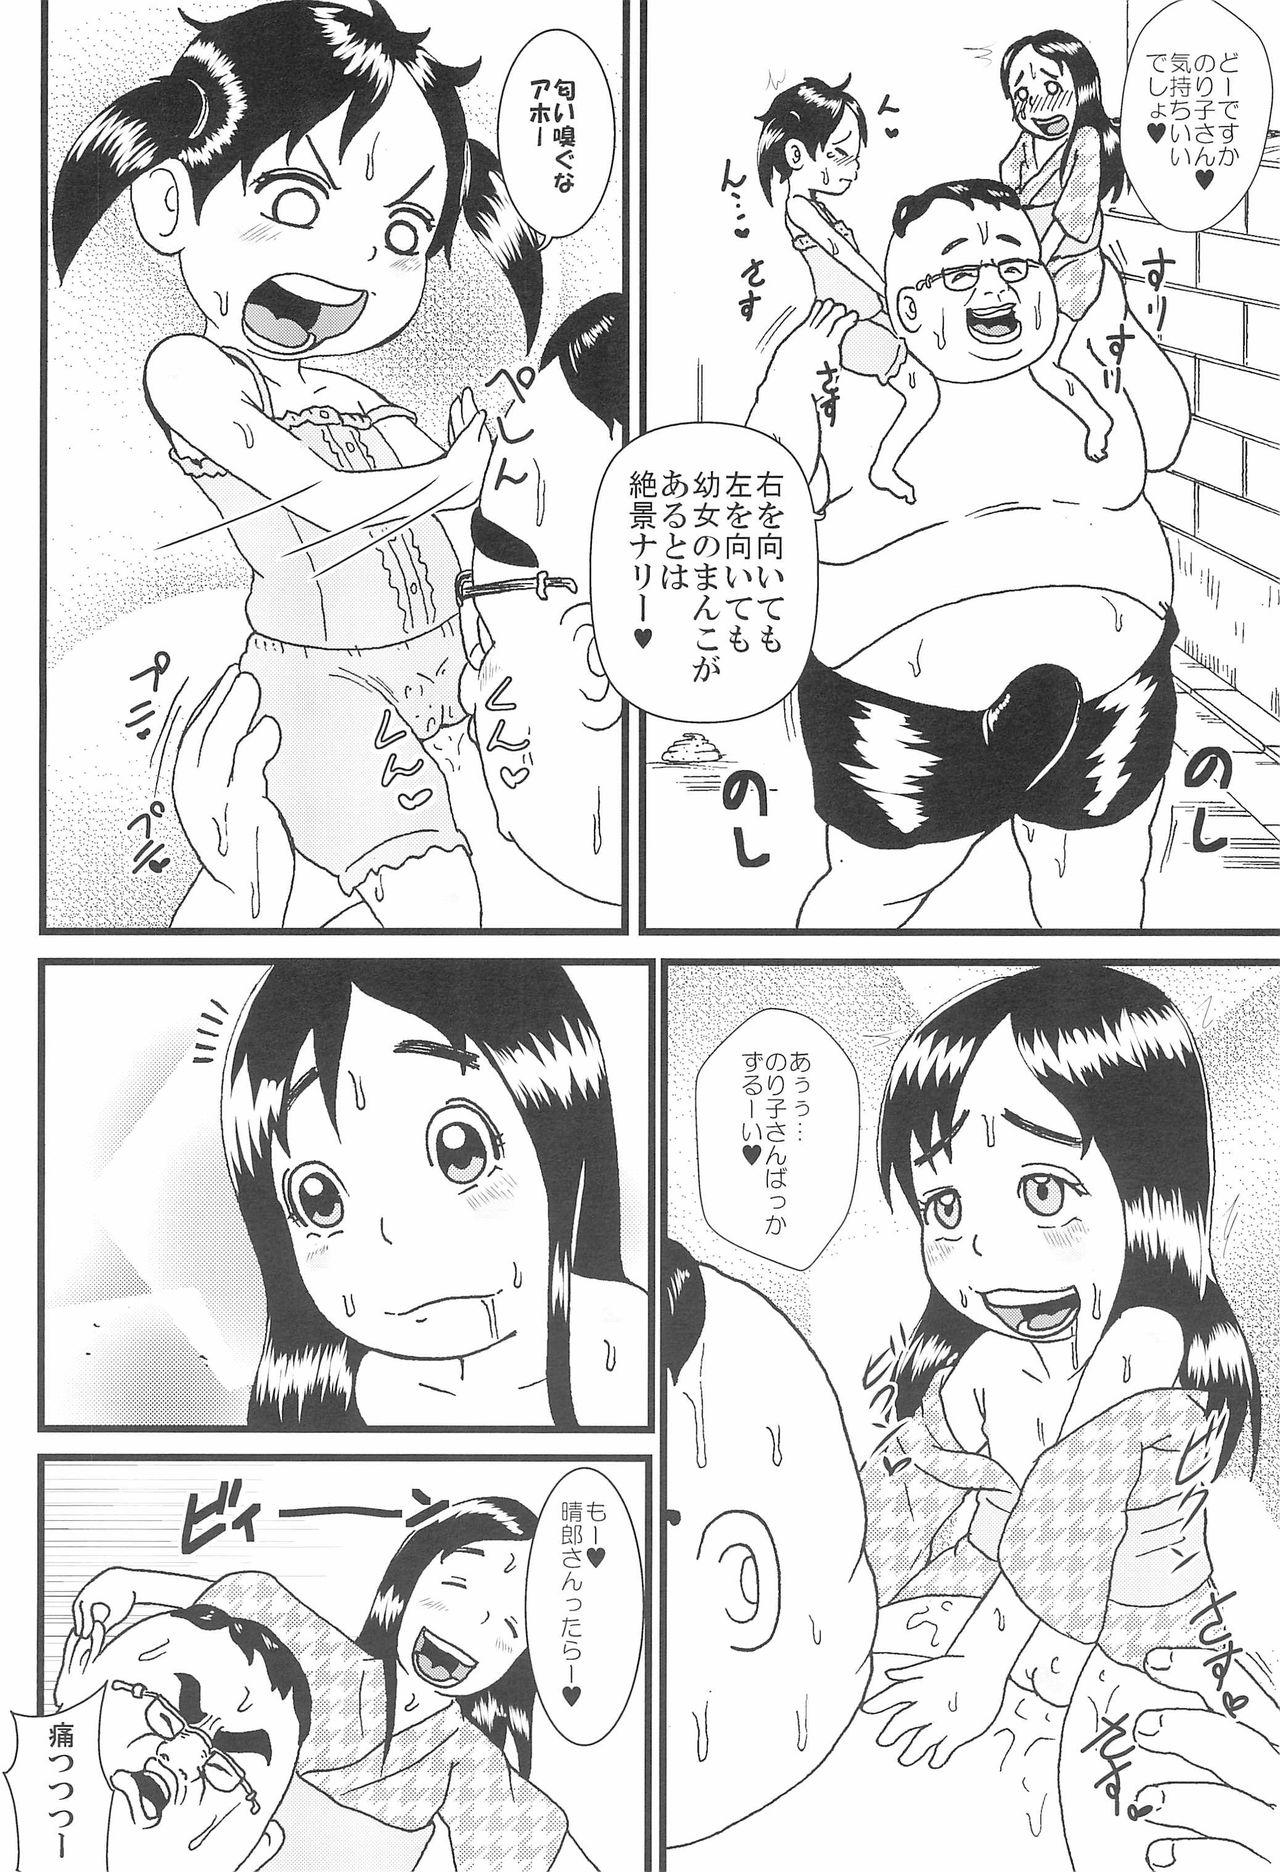 Outdoor Urayasu Chibikko Land - Super radical gag family Monster Dick - Page 8